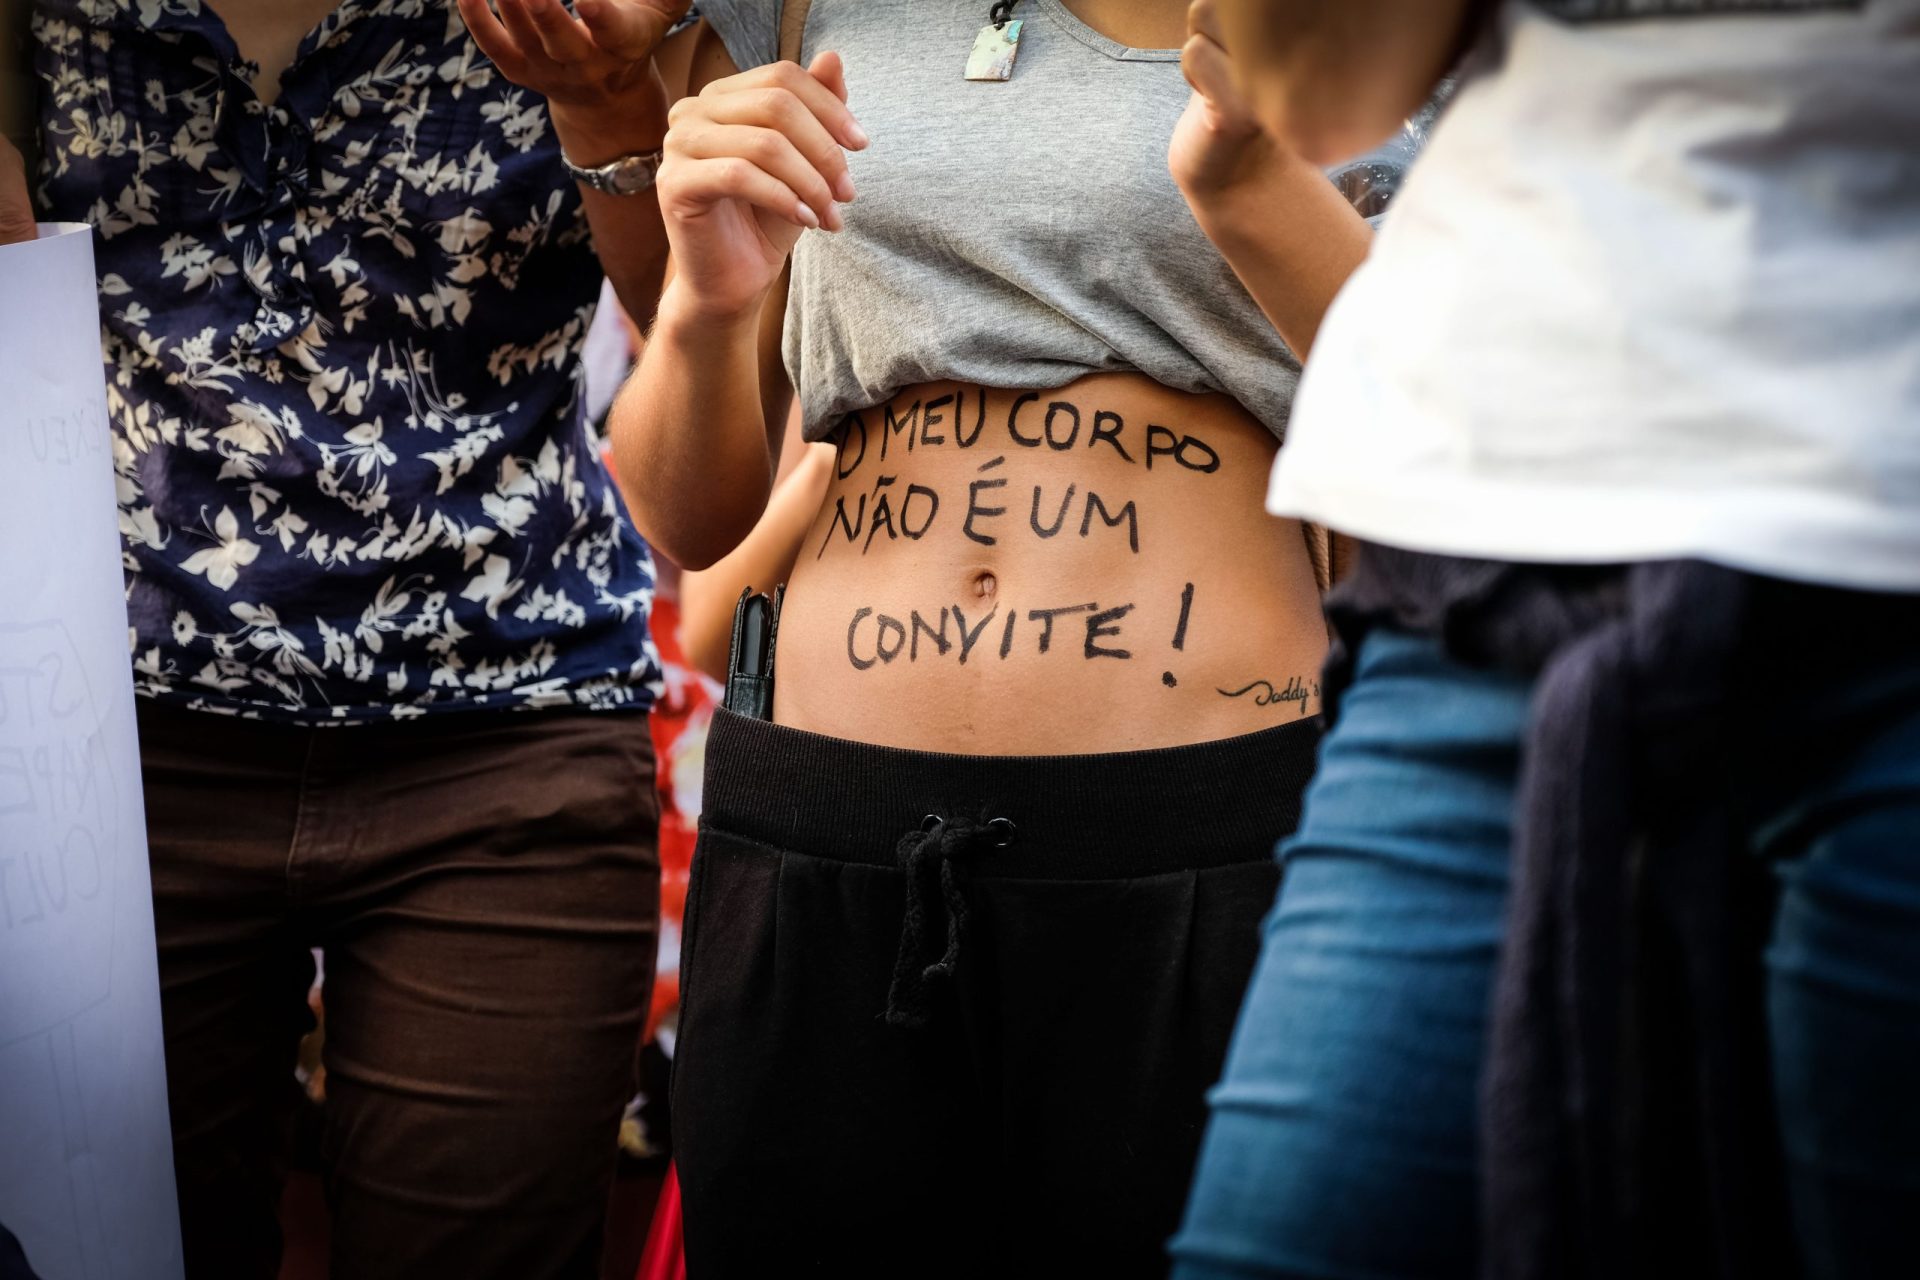 Lisboa: Mulheres e homens unidos contra a cultura da violação [vídeo]